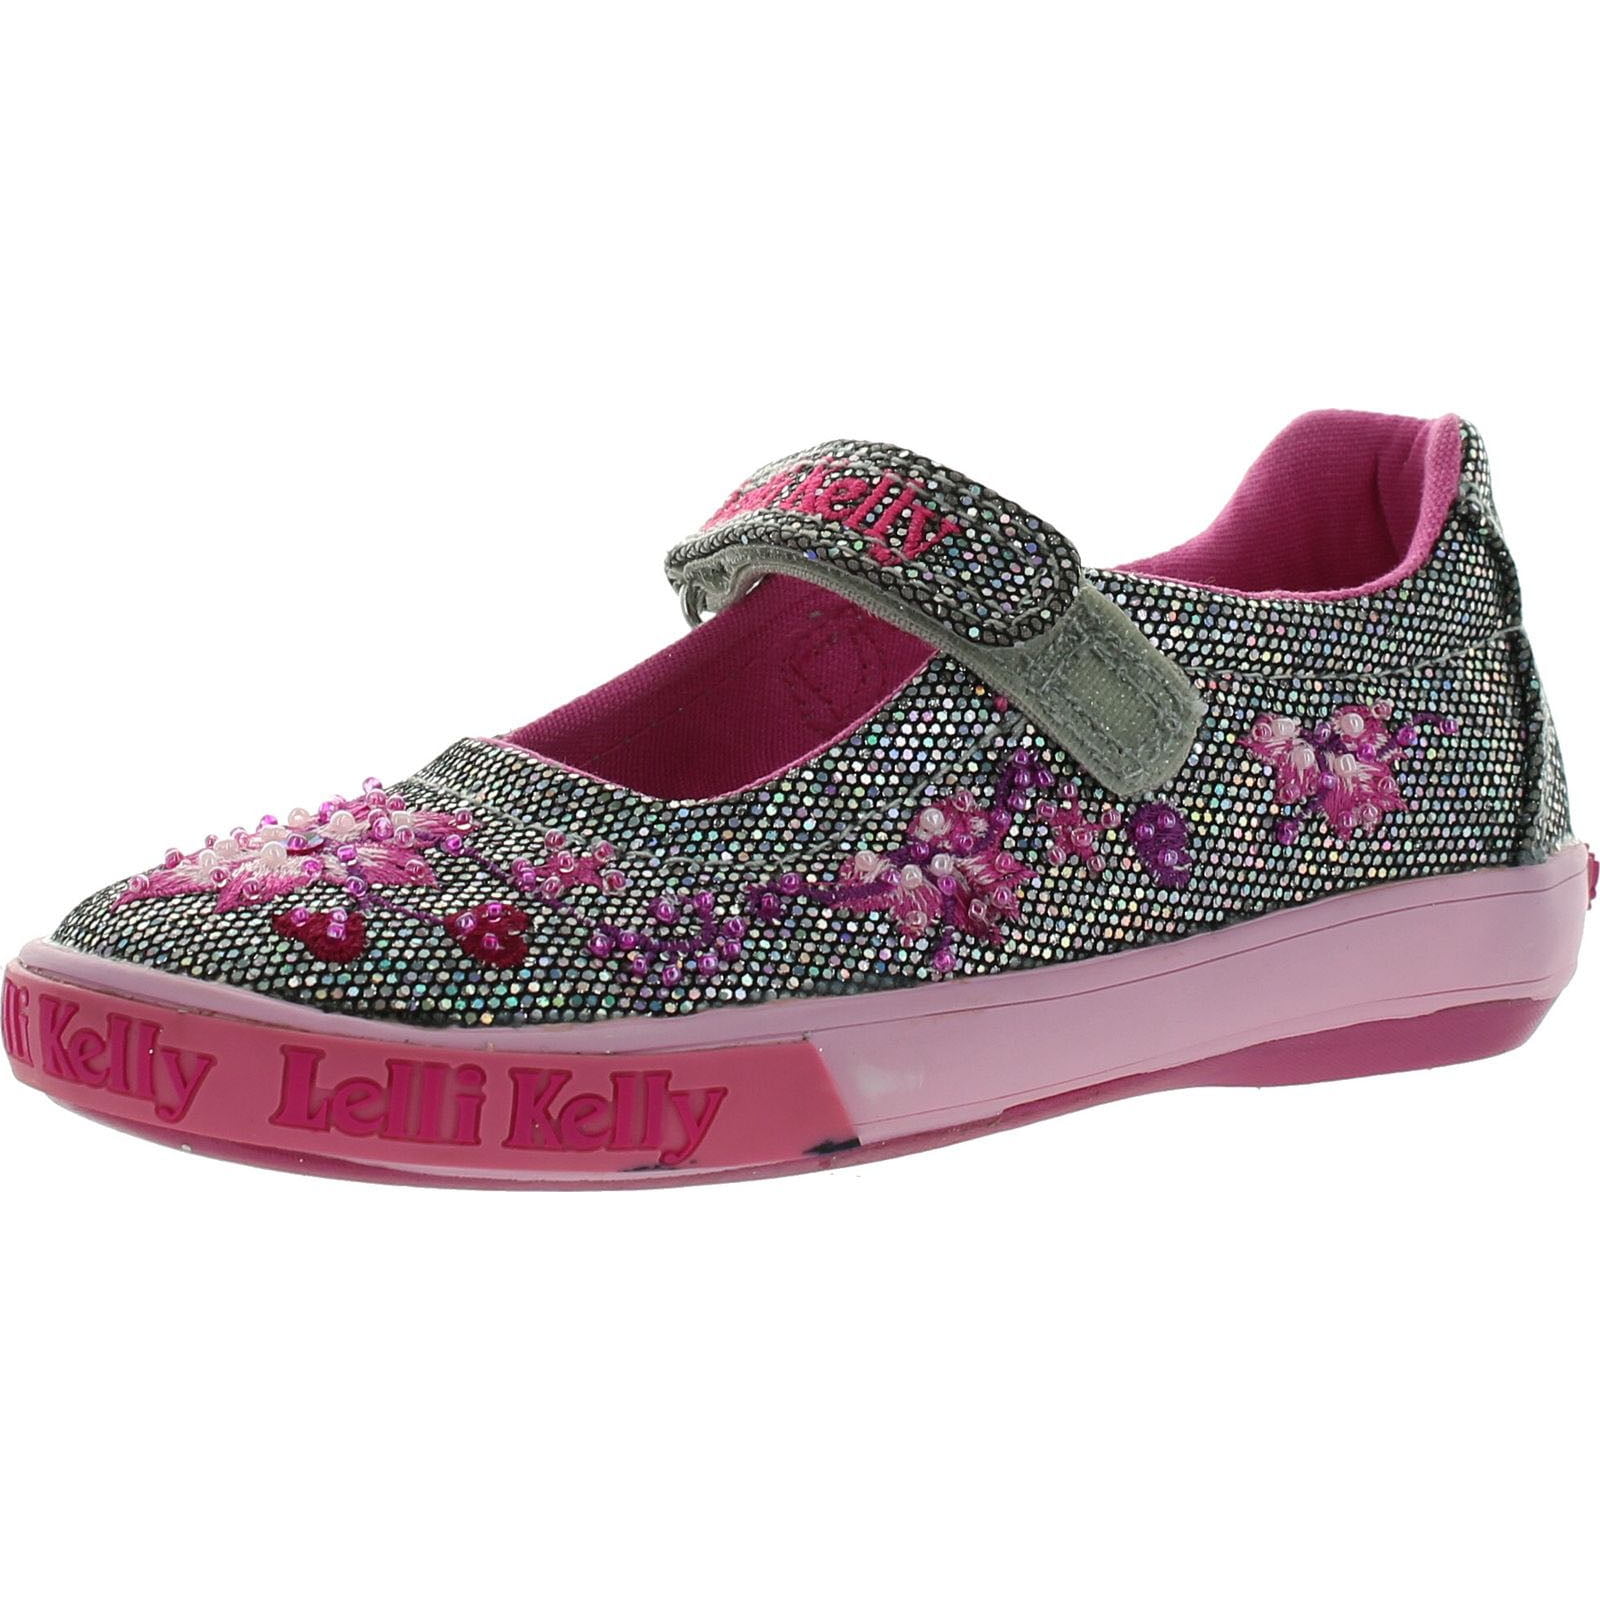 Lelli Kelly LK8555 Girls Shoes 